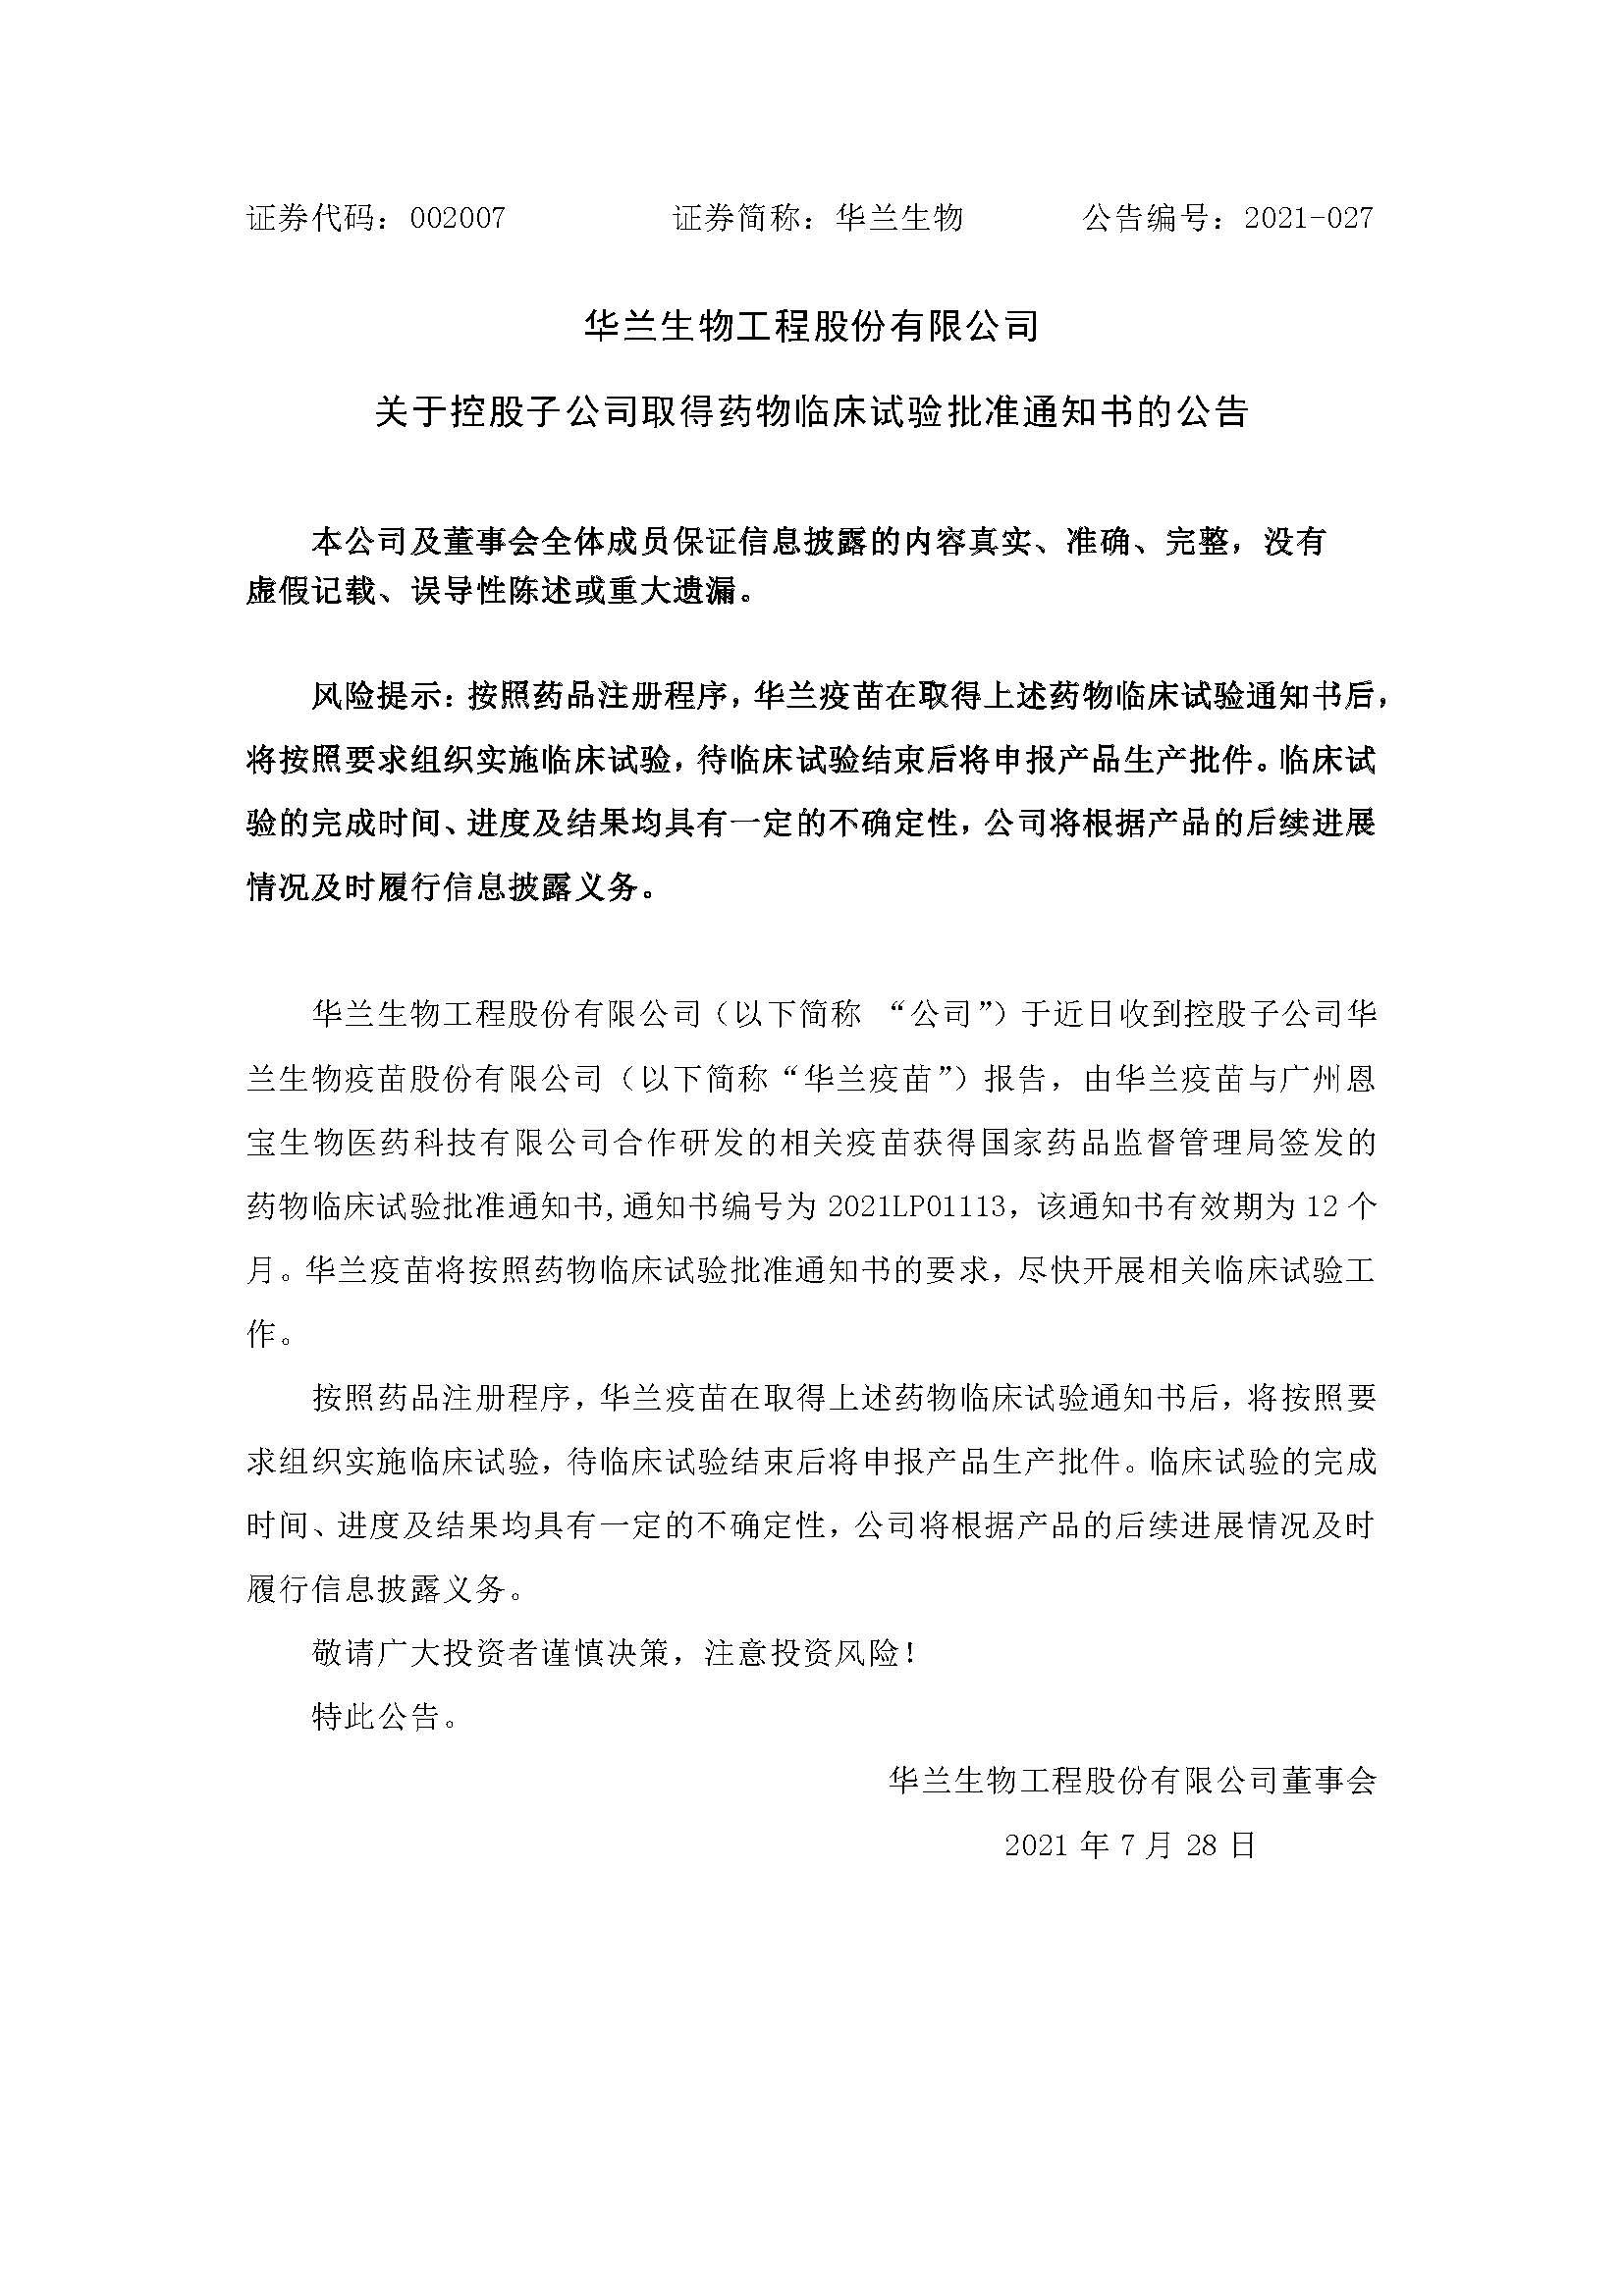 20210728 华兰疫苗与广州恩宝生物合作研发新冠疫苗获得临床试验批准通知书(1)